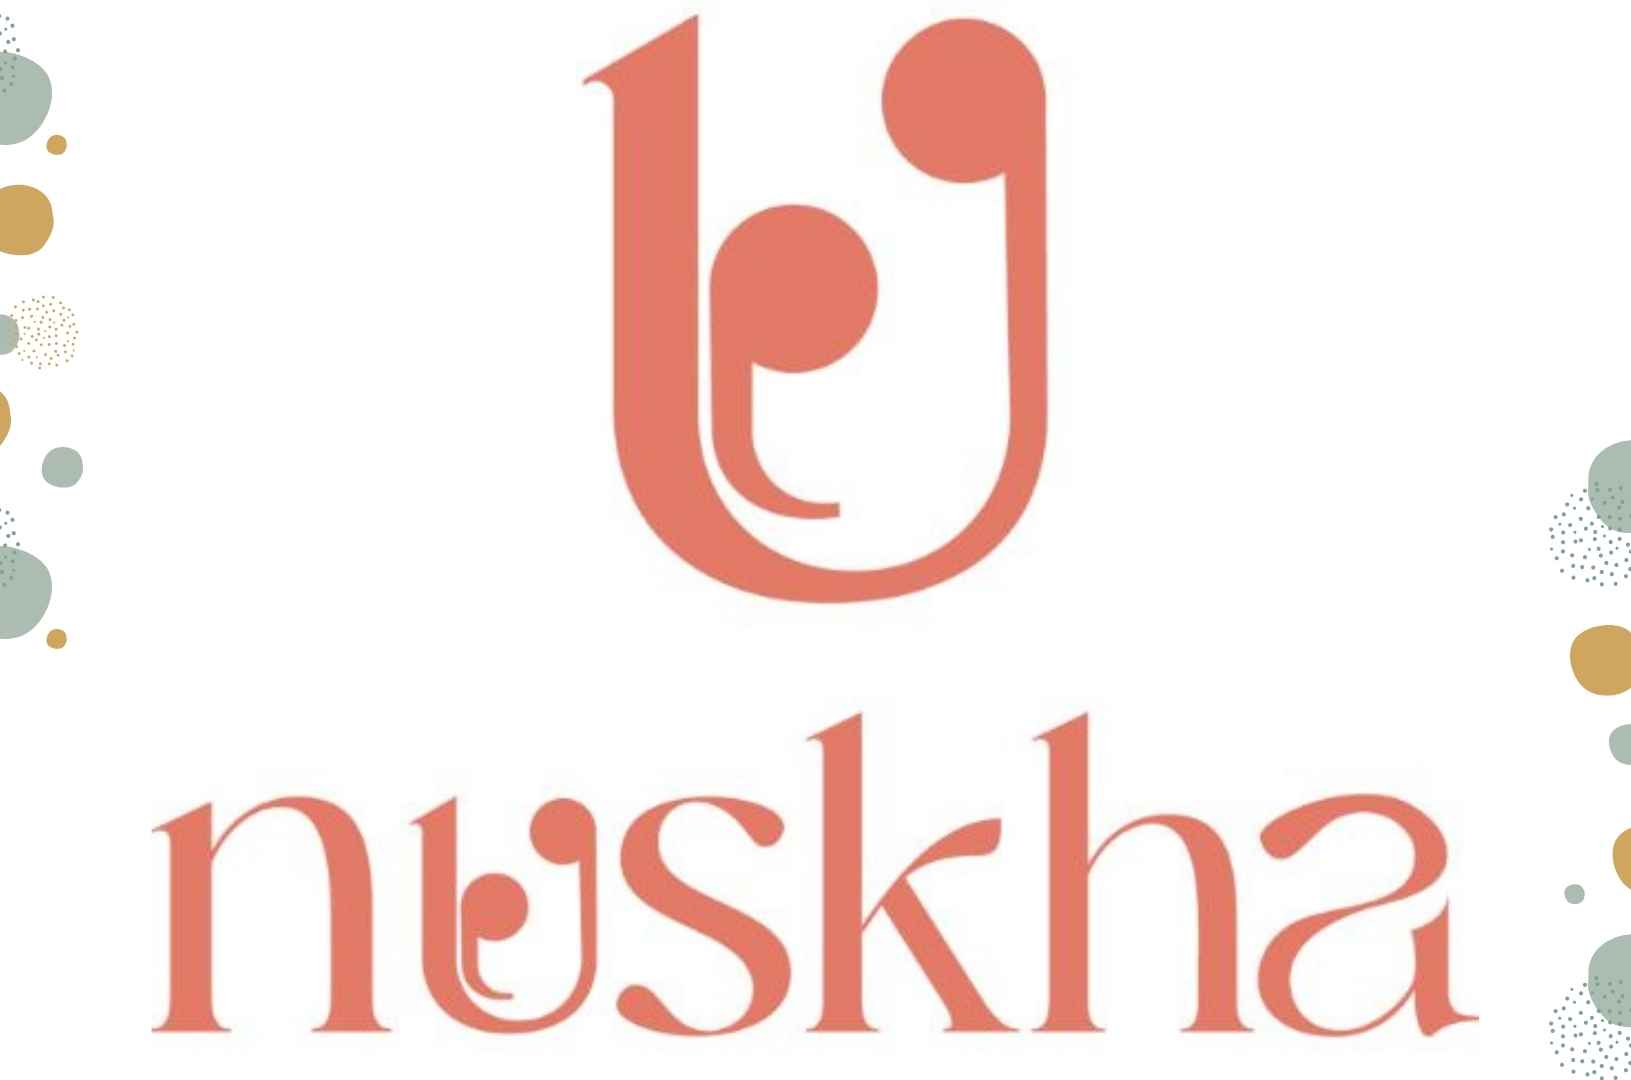 Nuskha Kitchen